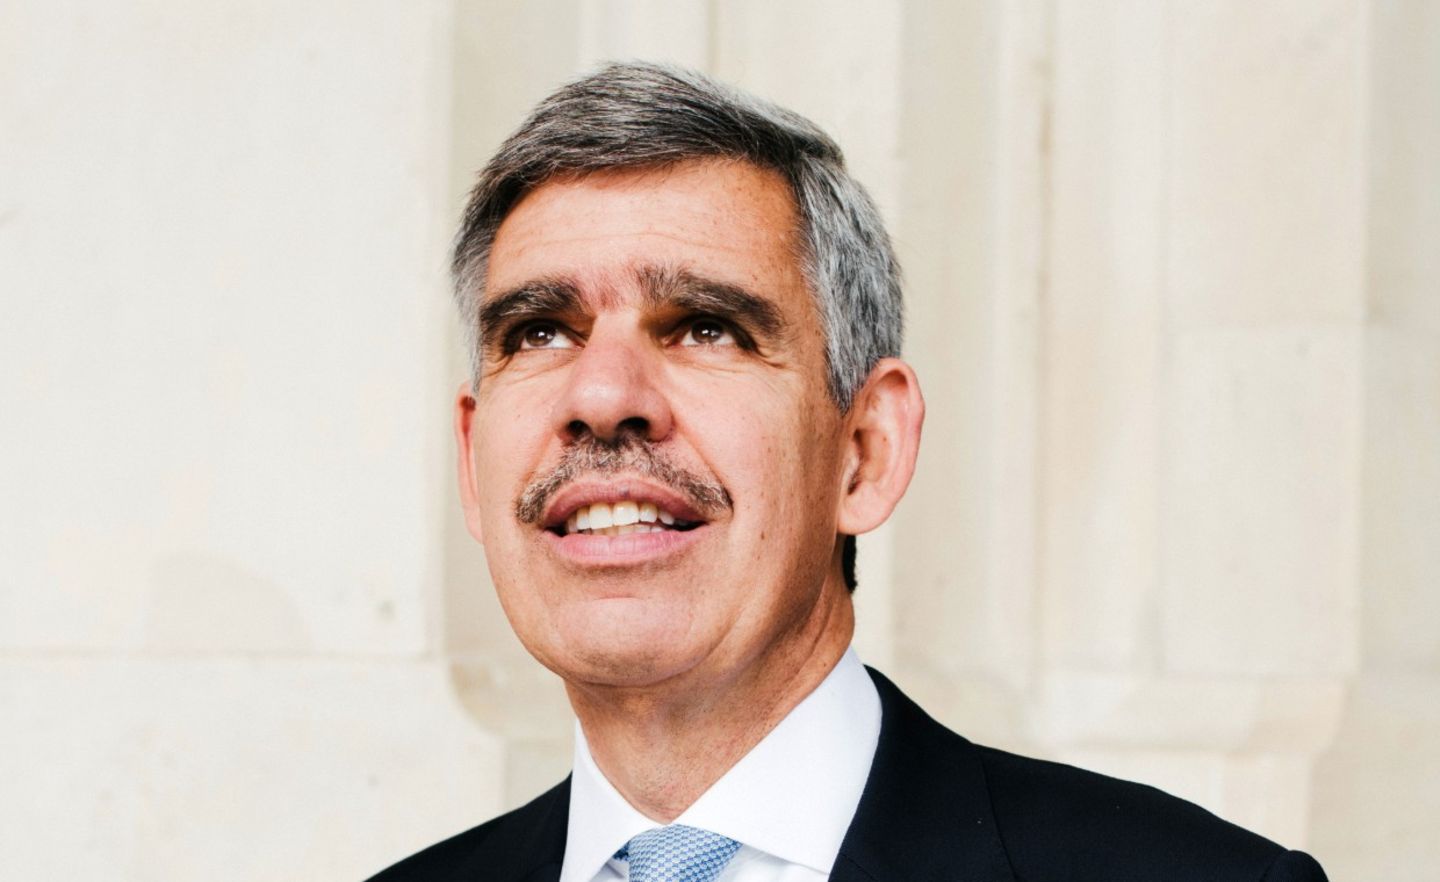 Mohamed El-Erian: Der US-Ökonom berät den Versicherungsriesen Allianz, dessen Fondstochter Pimco er einst leitete. Zudem übernimmt er 2020 das Amt des Präsidenten am Queen’s College der Universität Cambridge